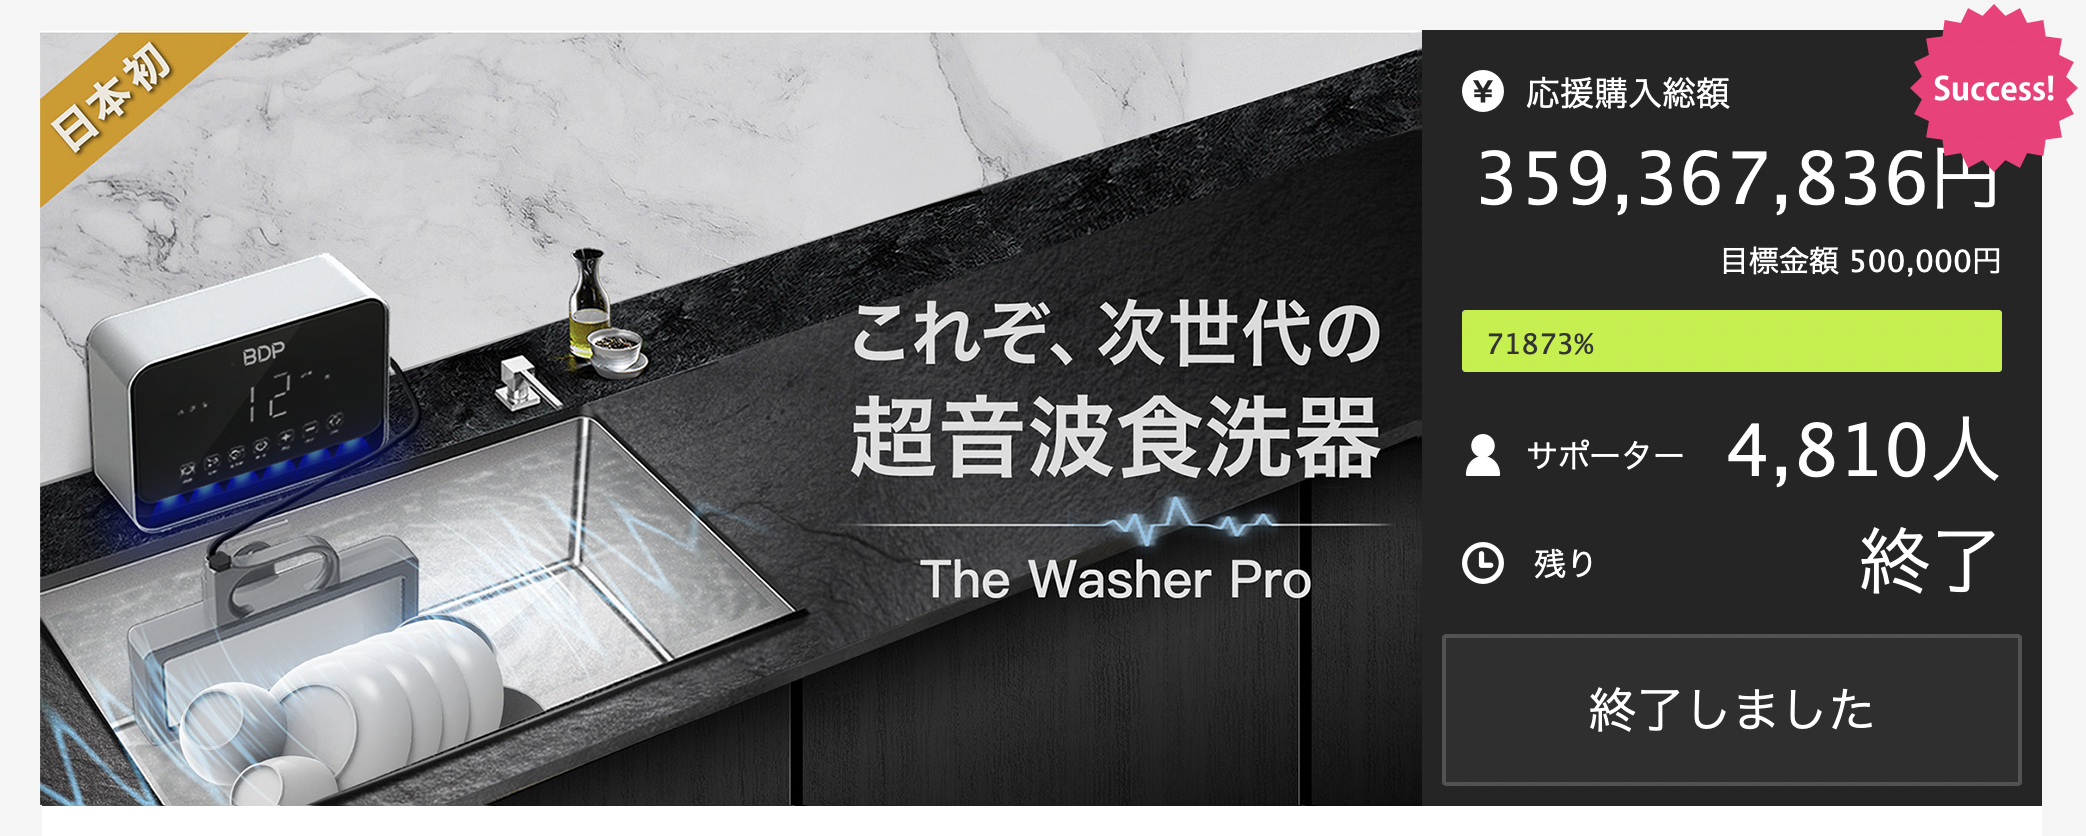 BDP 超音波食洗機 The Washer Pro 新品 - 生活家電